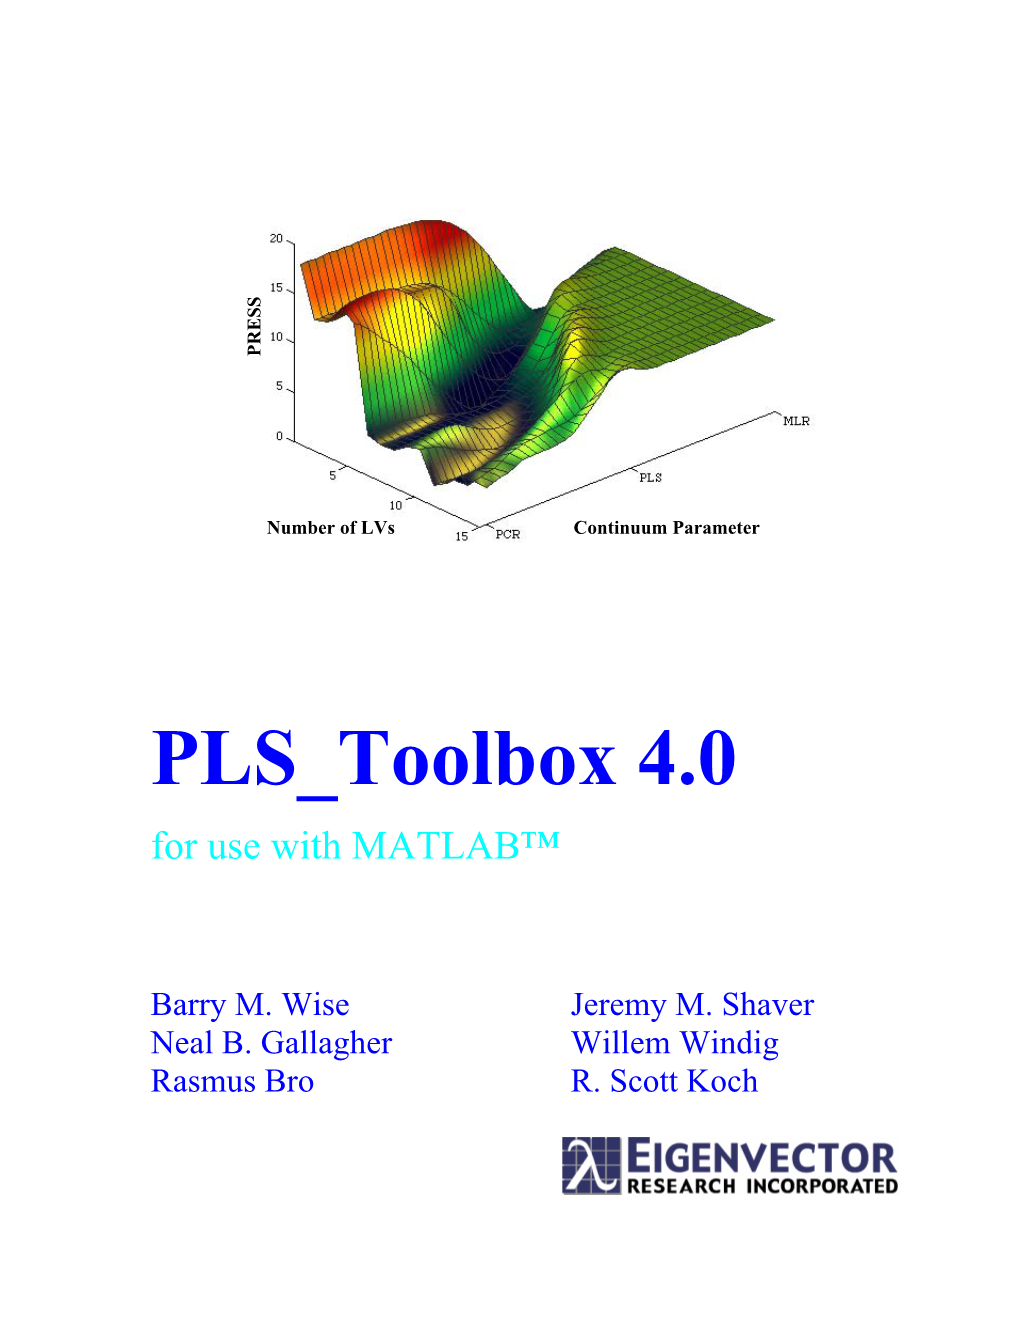 PLS Toolbox 4.0 Manual